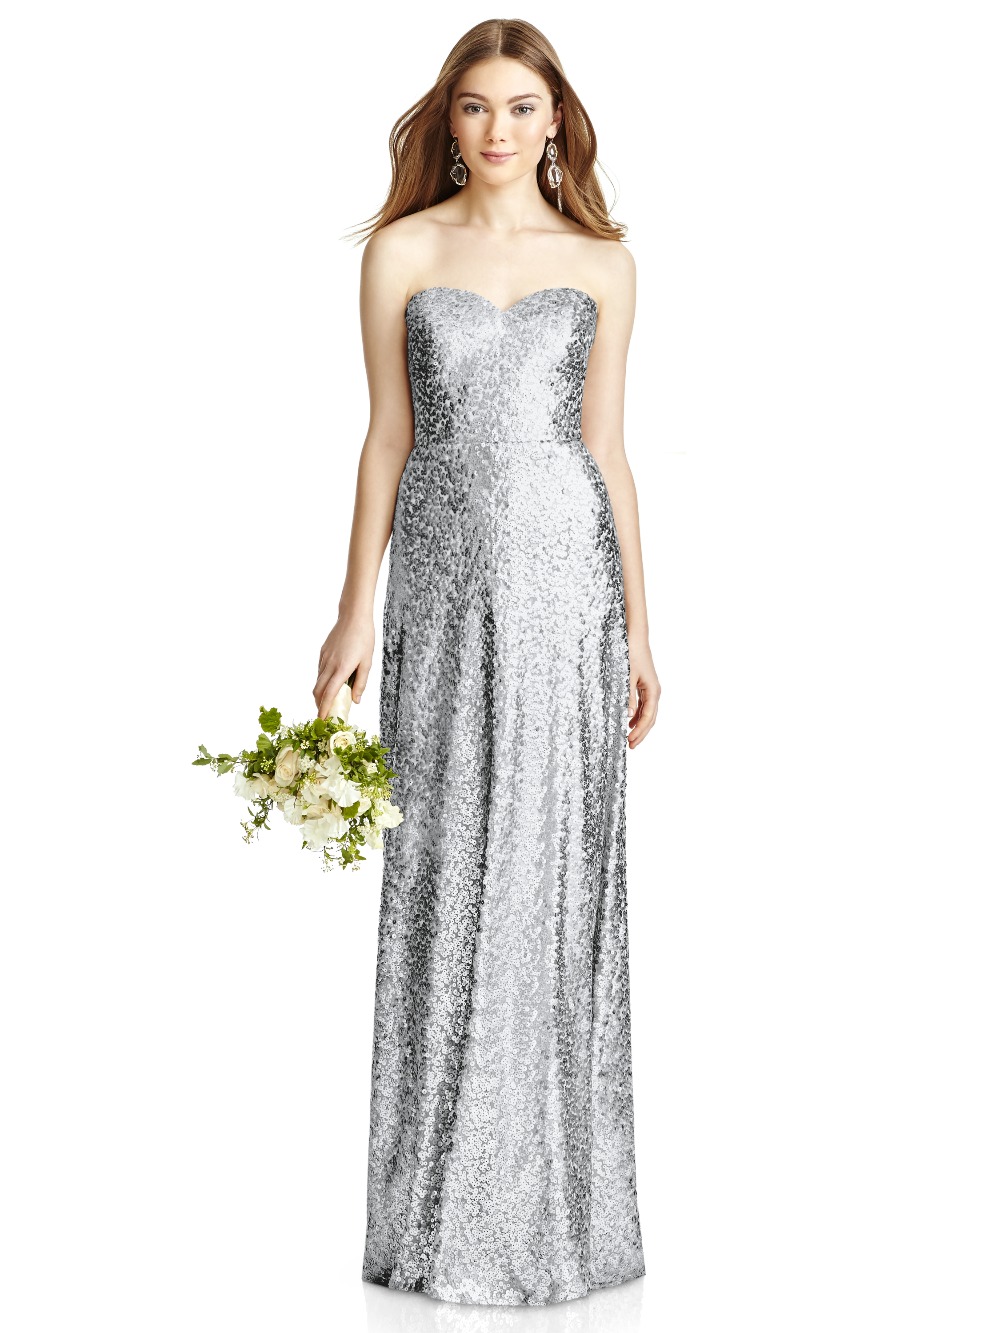 sequin-bridesmaid-dresses35